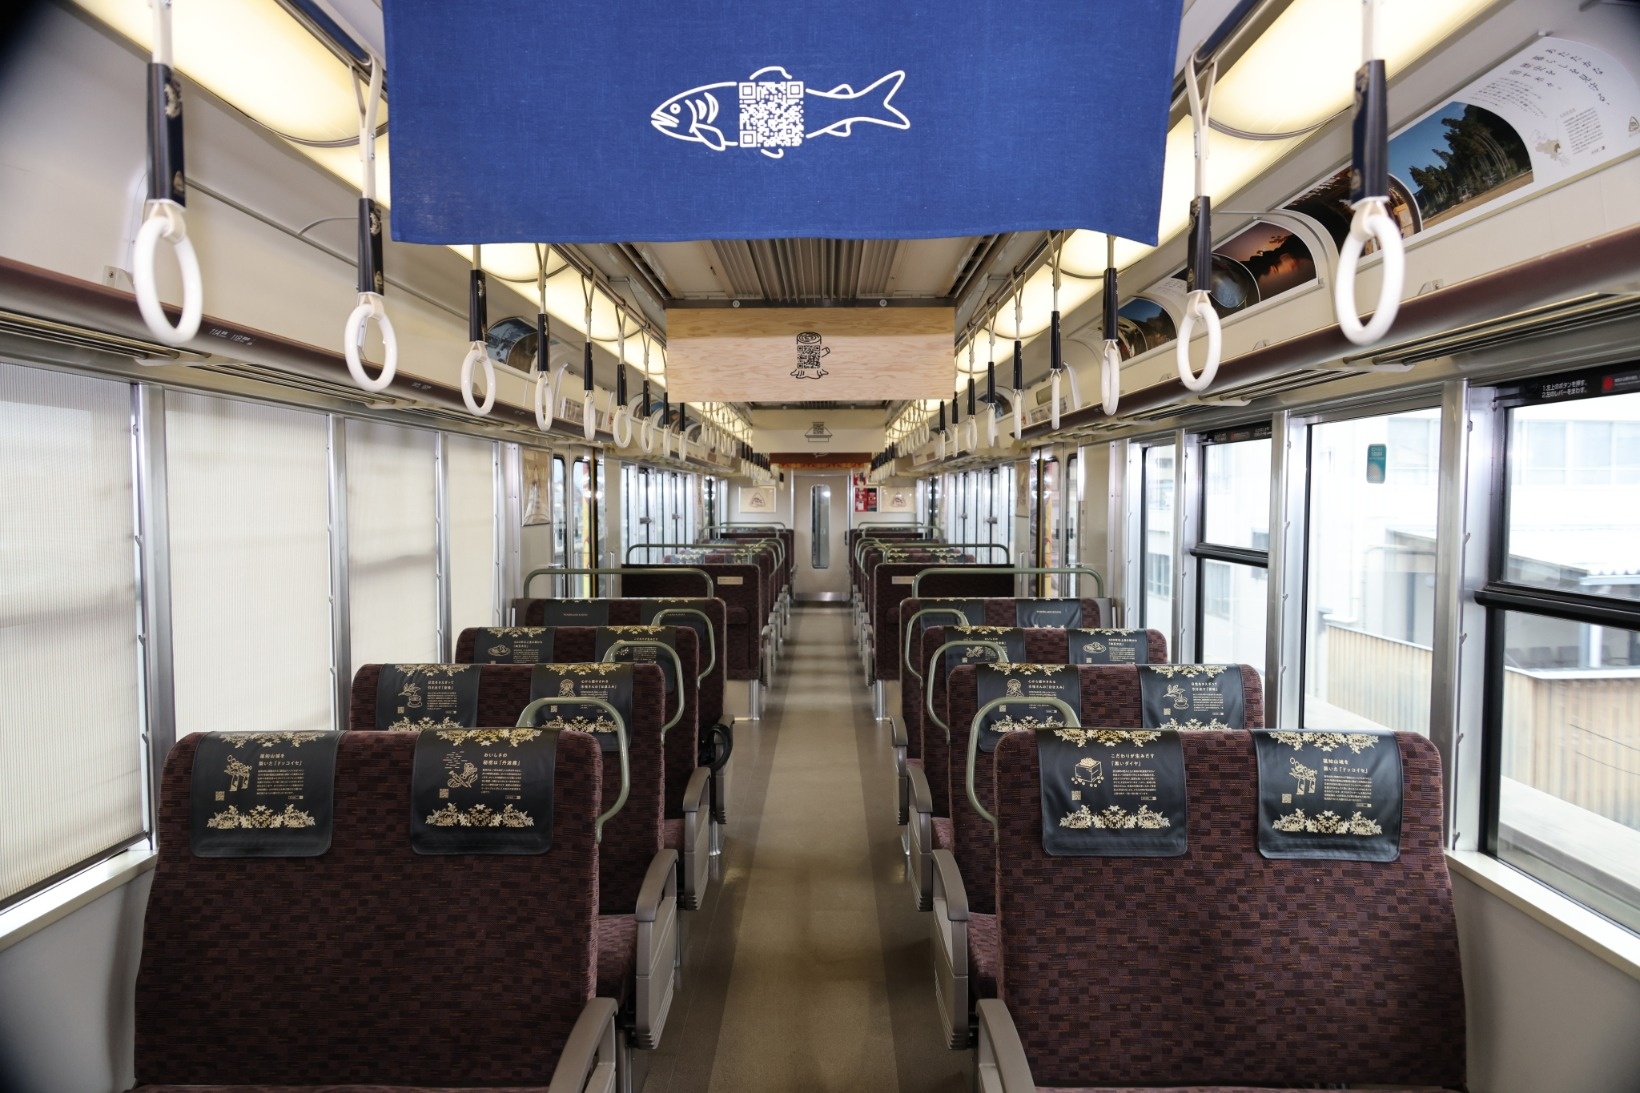 嵯峨野線を走る 森の京都qrトレイン で もうひとつの京都 へ トレたび 鉄道 旅行情報サイト